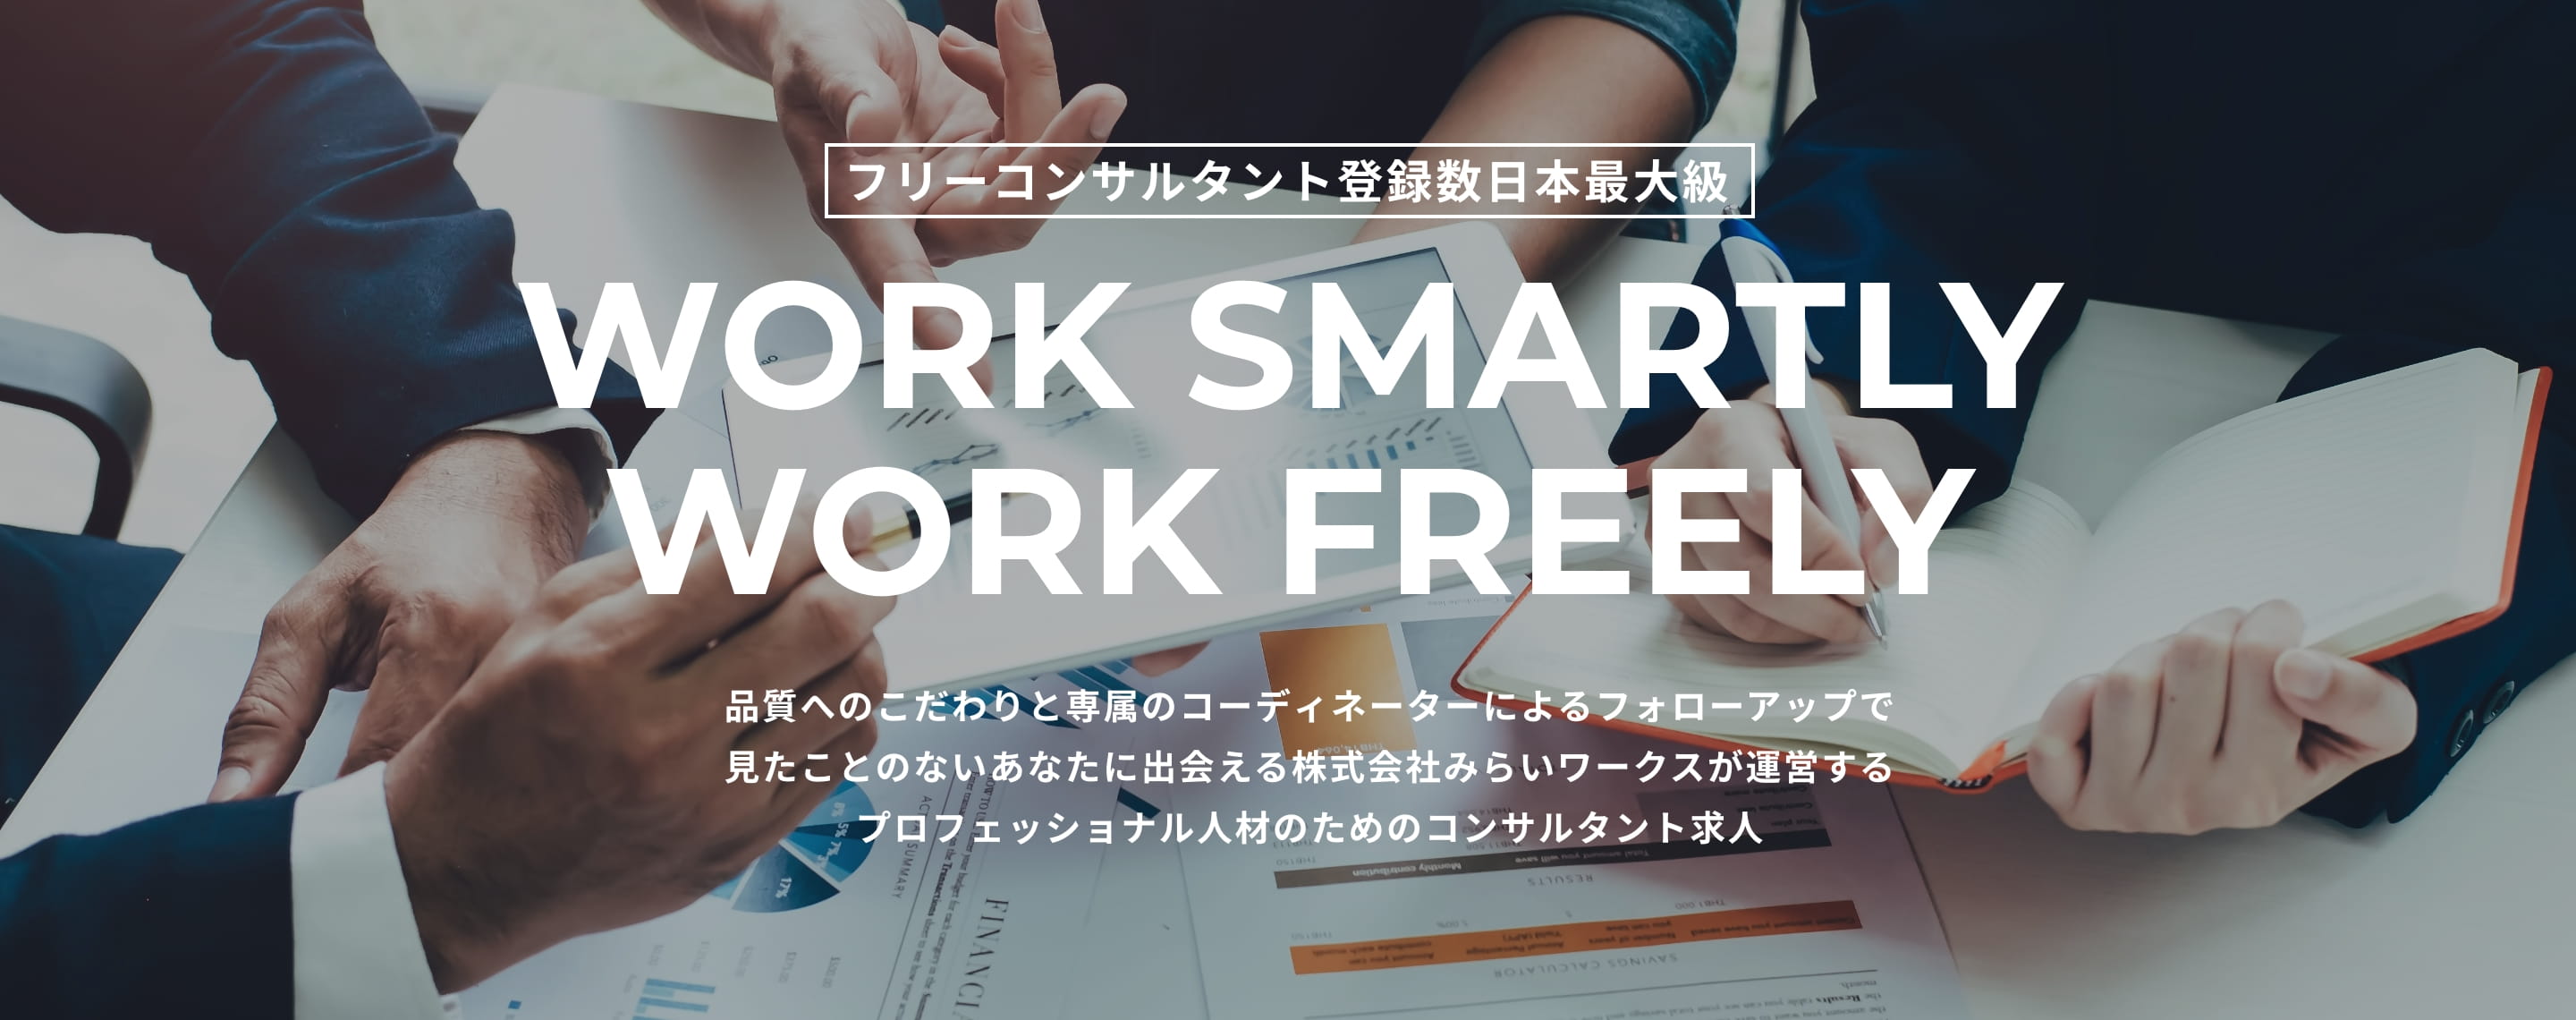 フリーコンサルタント登録数日本最大級 WORK SMARTLY WORK FREELY 品質へのこだわりと専属のコーディネーターによるフォローアップで見たことのないあなたに出会える株式会社みらいワークスが運営するプロフェッショナル人材のためのコンサルタント求人